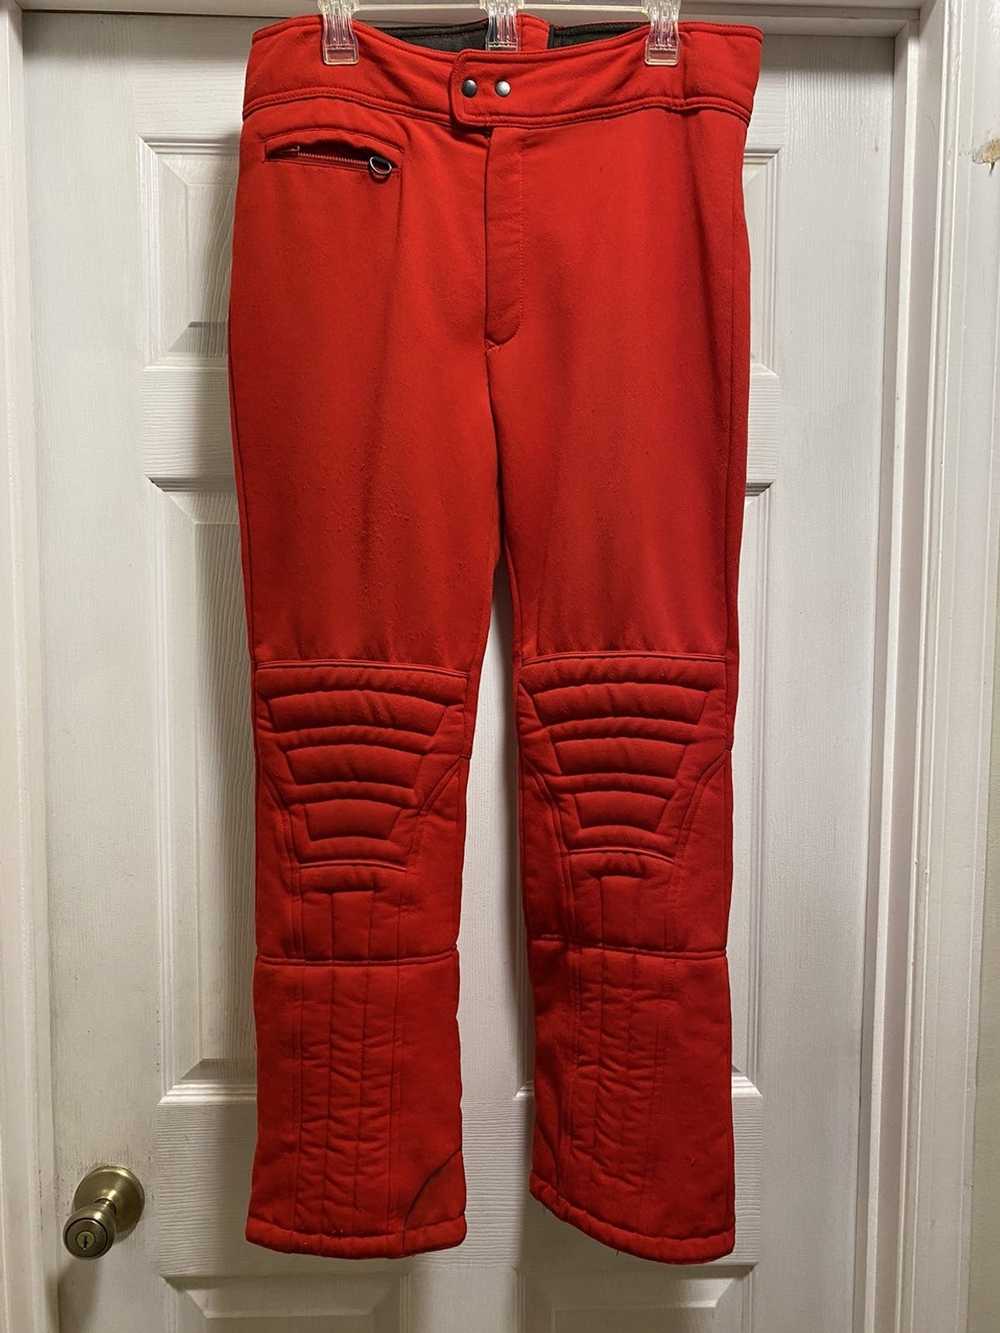 Japanese Brand × Vintage Vintage ski pants - image 2